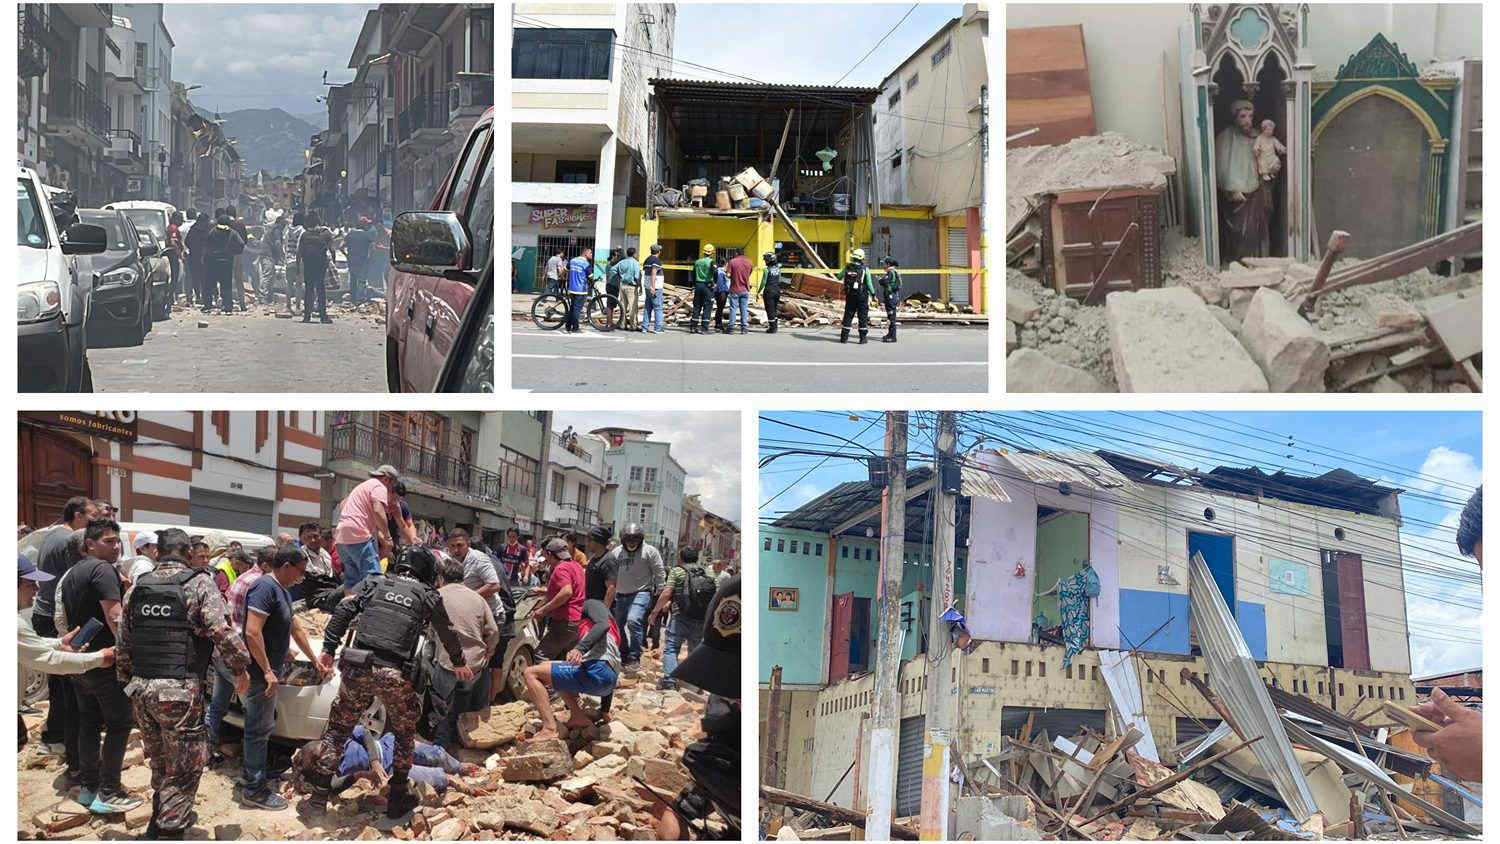 Terremoto in Ecuador: centinaia di feriti, morti e ingenti danni. Le immagini dell'accaduto